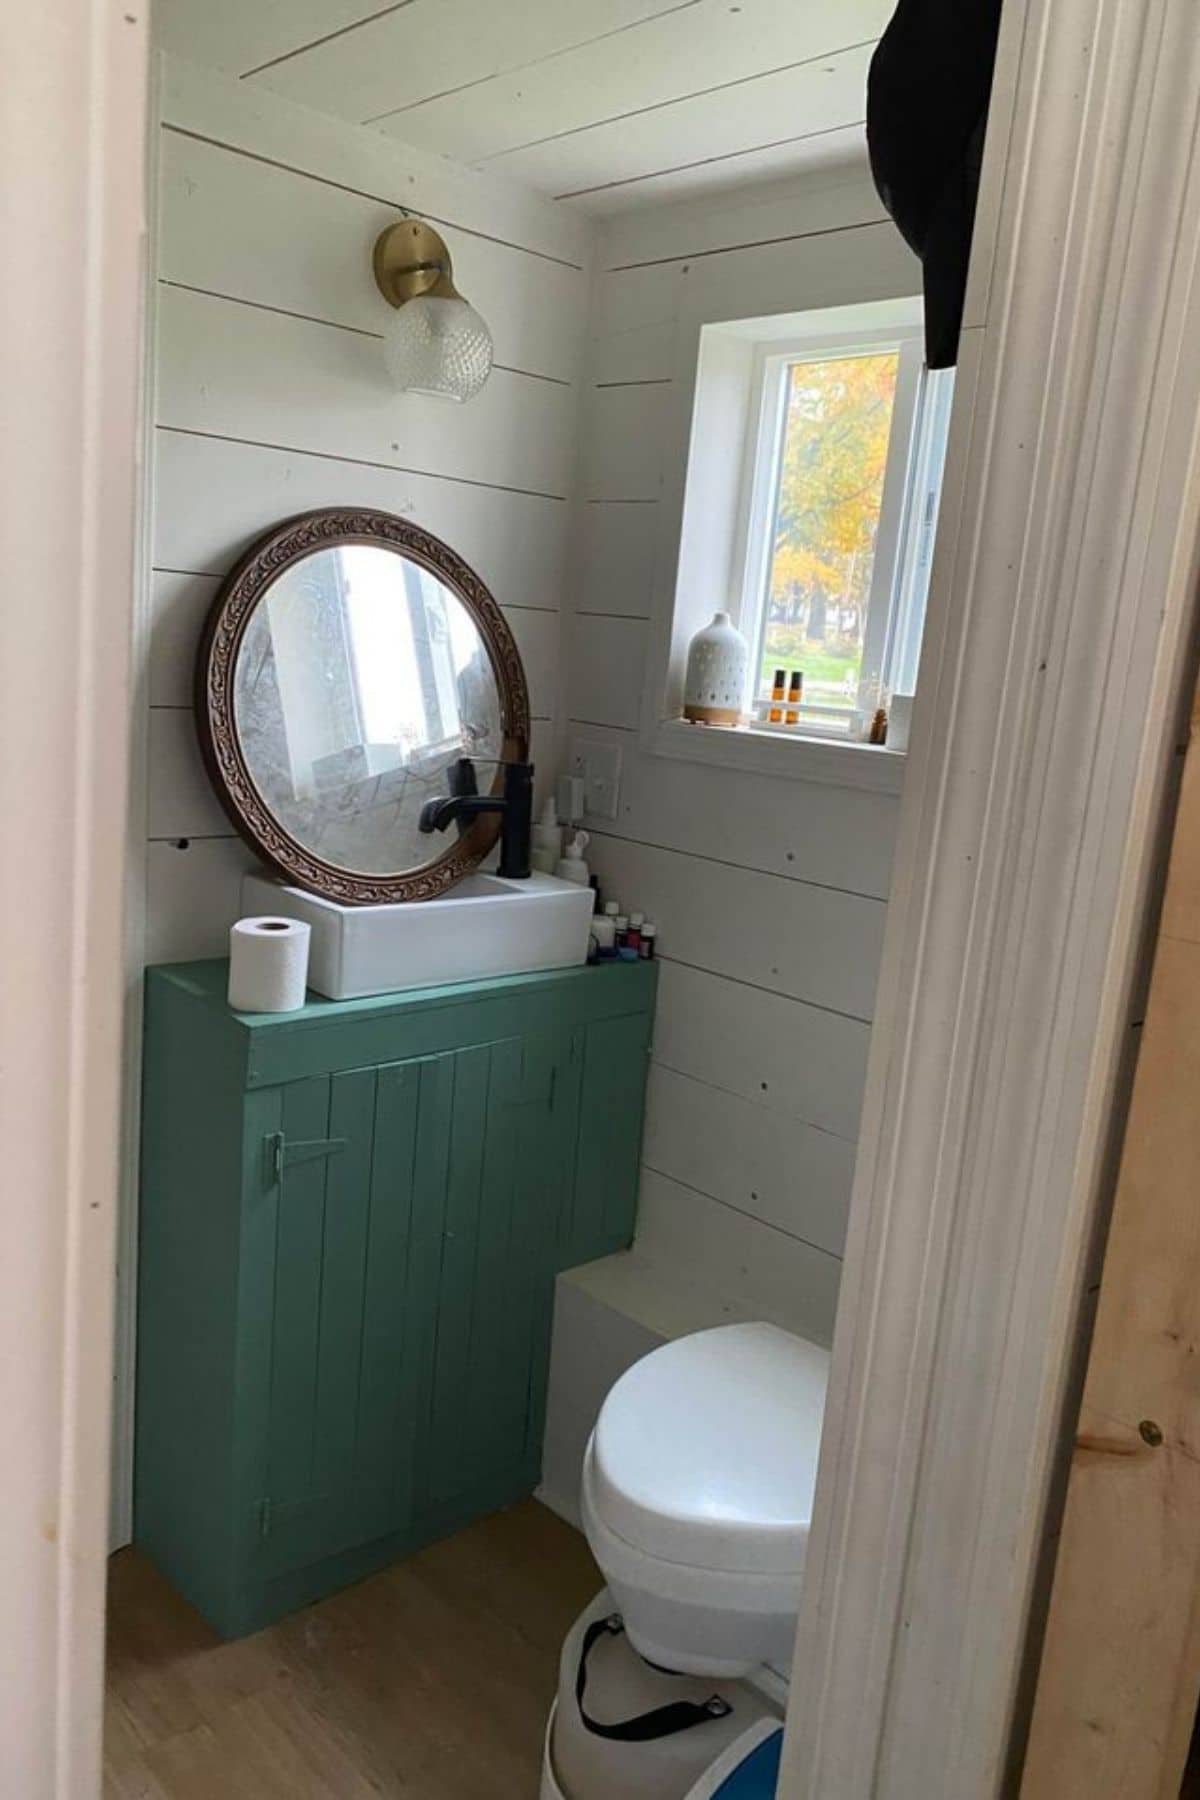 teal vanity under round mirror next to white toilet under window